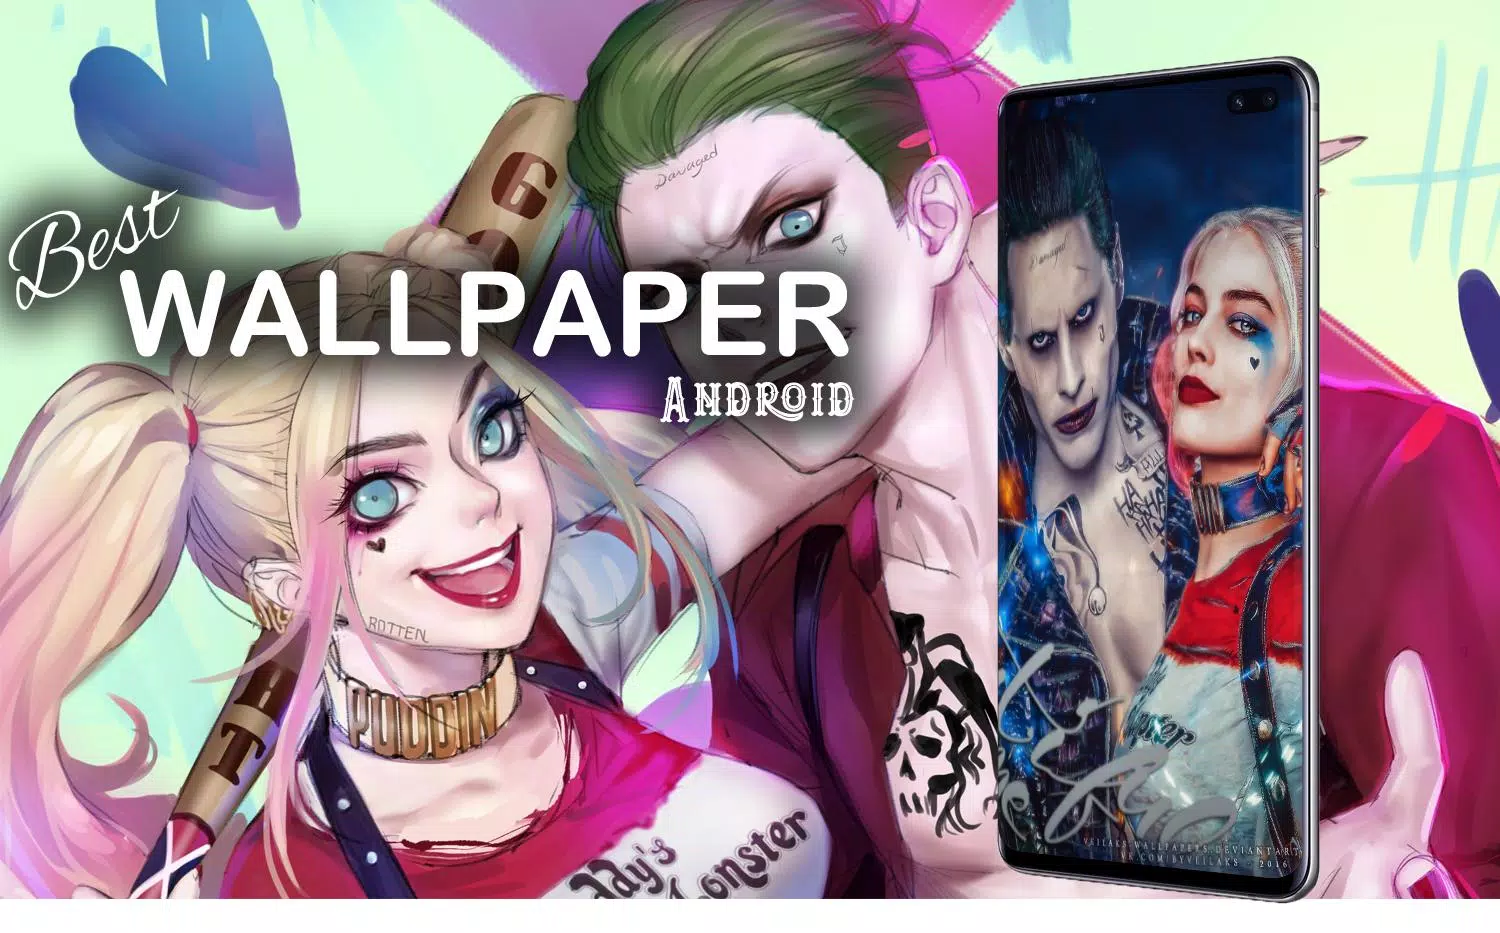 Harley Quinn and Joker Wallpaper & Lockscreen APK pour Android Télécharger